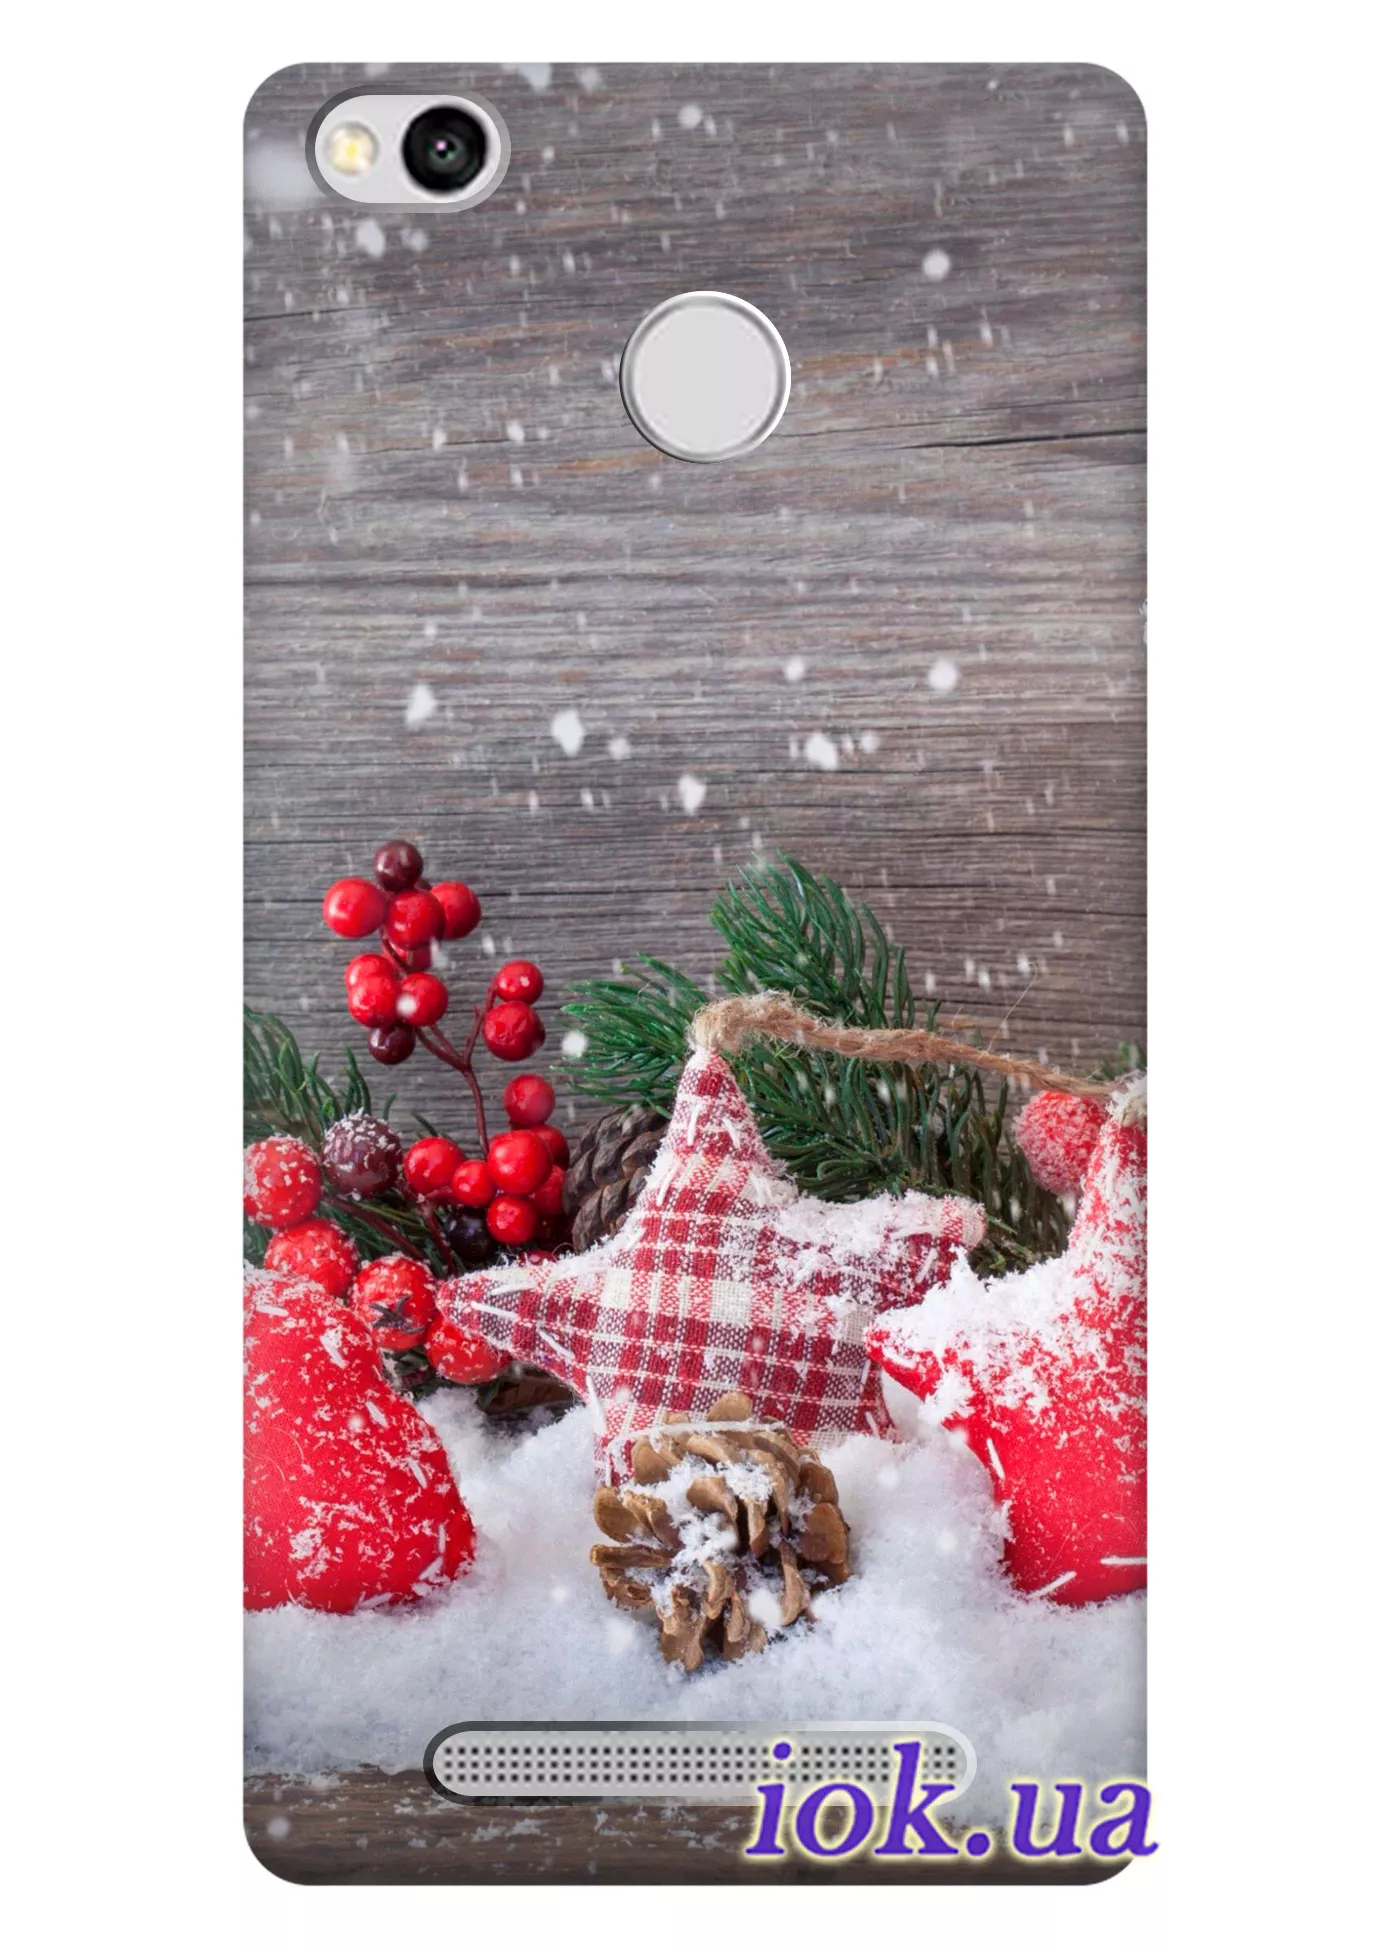 Чехол для Xiaomi Redmi 3 Pro - Снежные игрушки